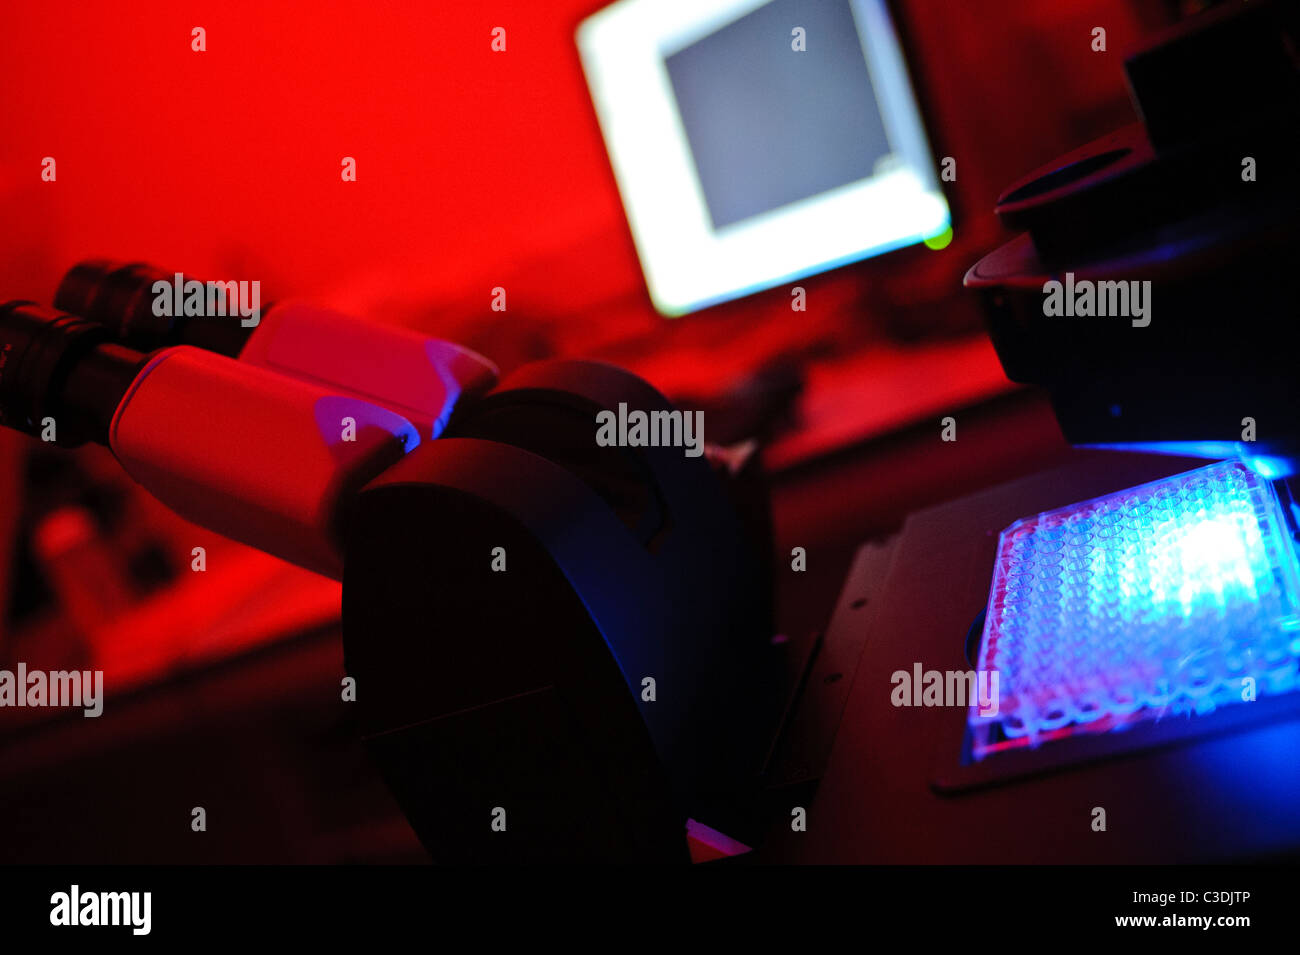 Chambre noire en microscope allumé rouge vif avec écran de l'ordinateur en arrière-plan et vert et bleu test tubes Banque D'Images